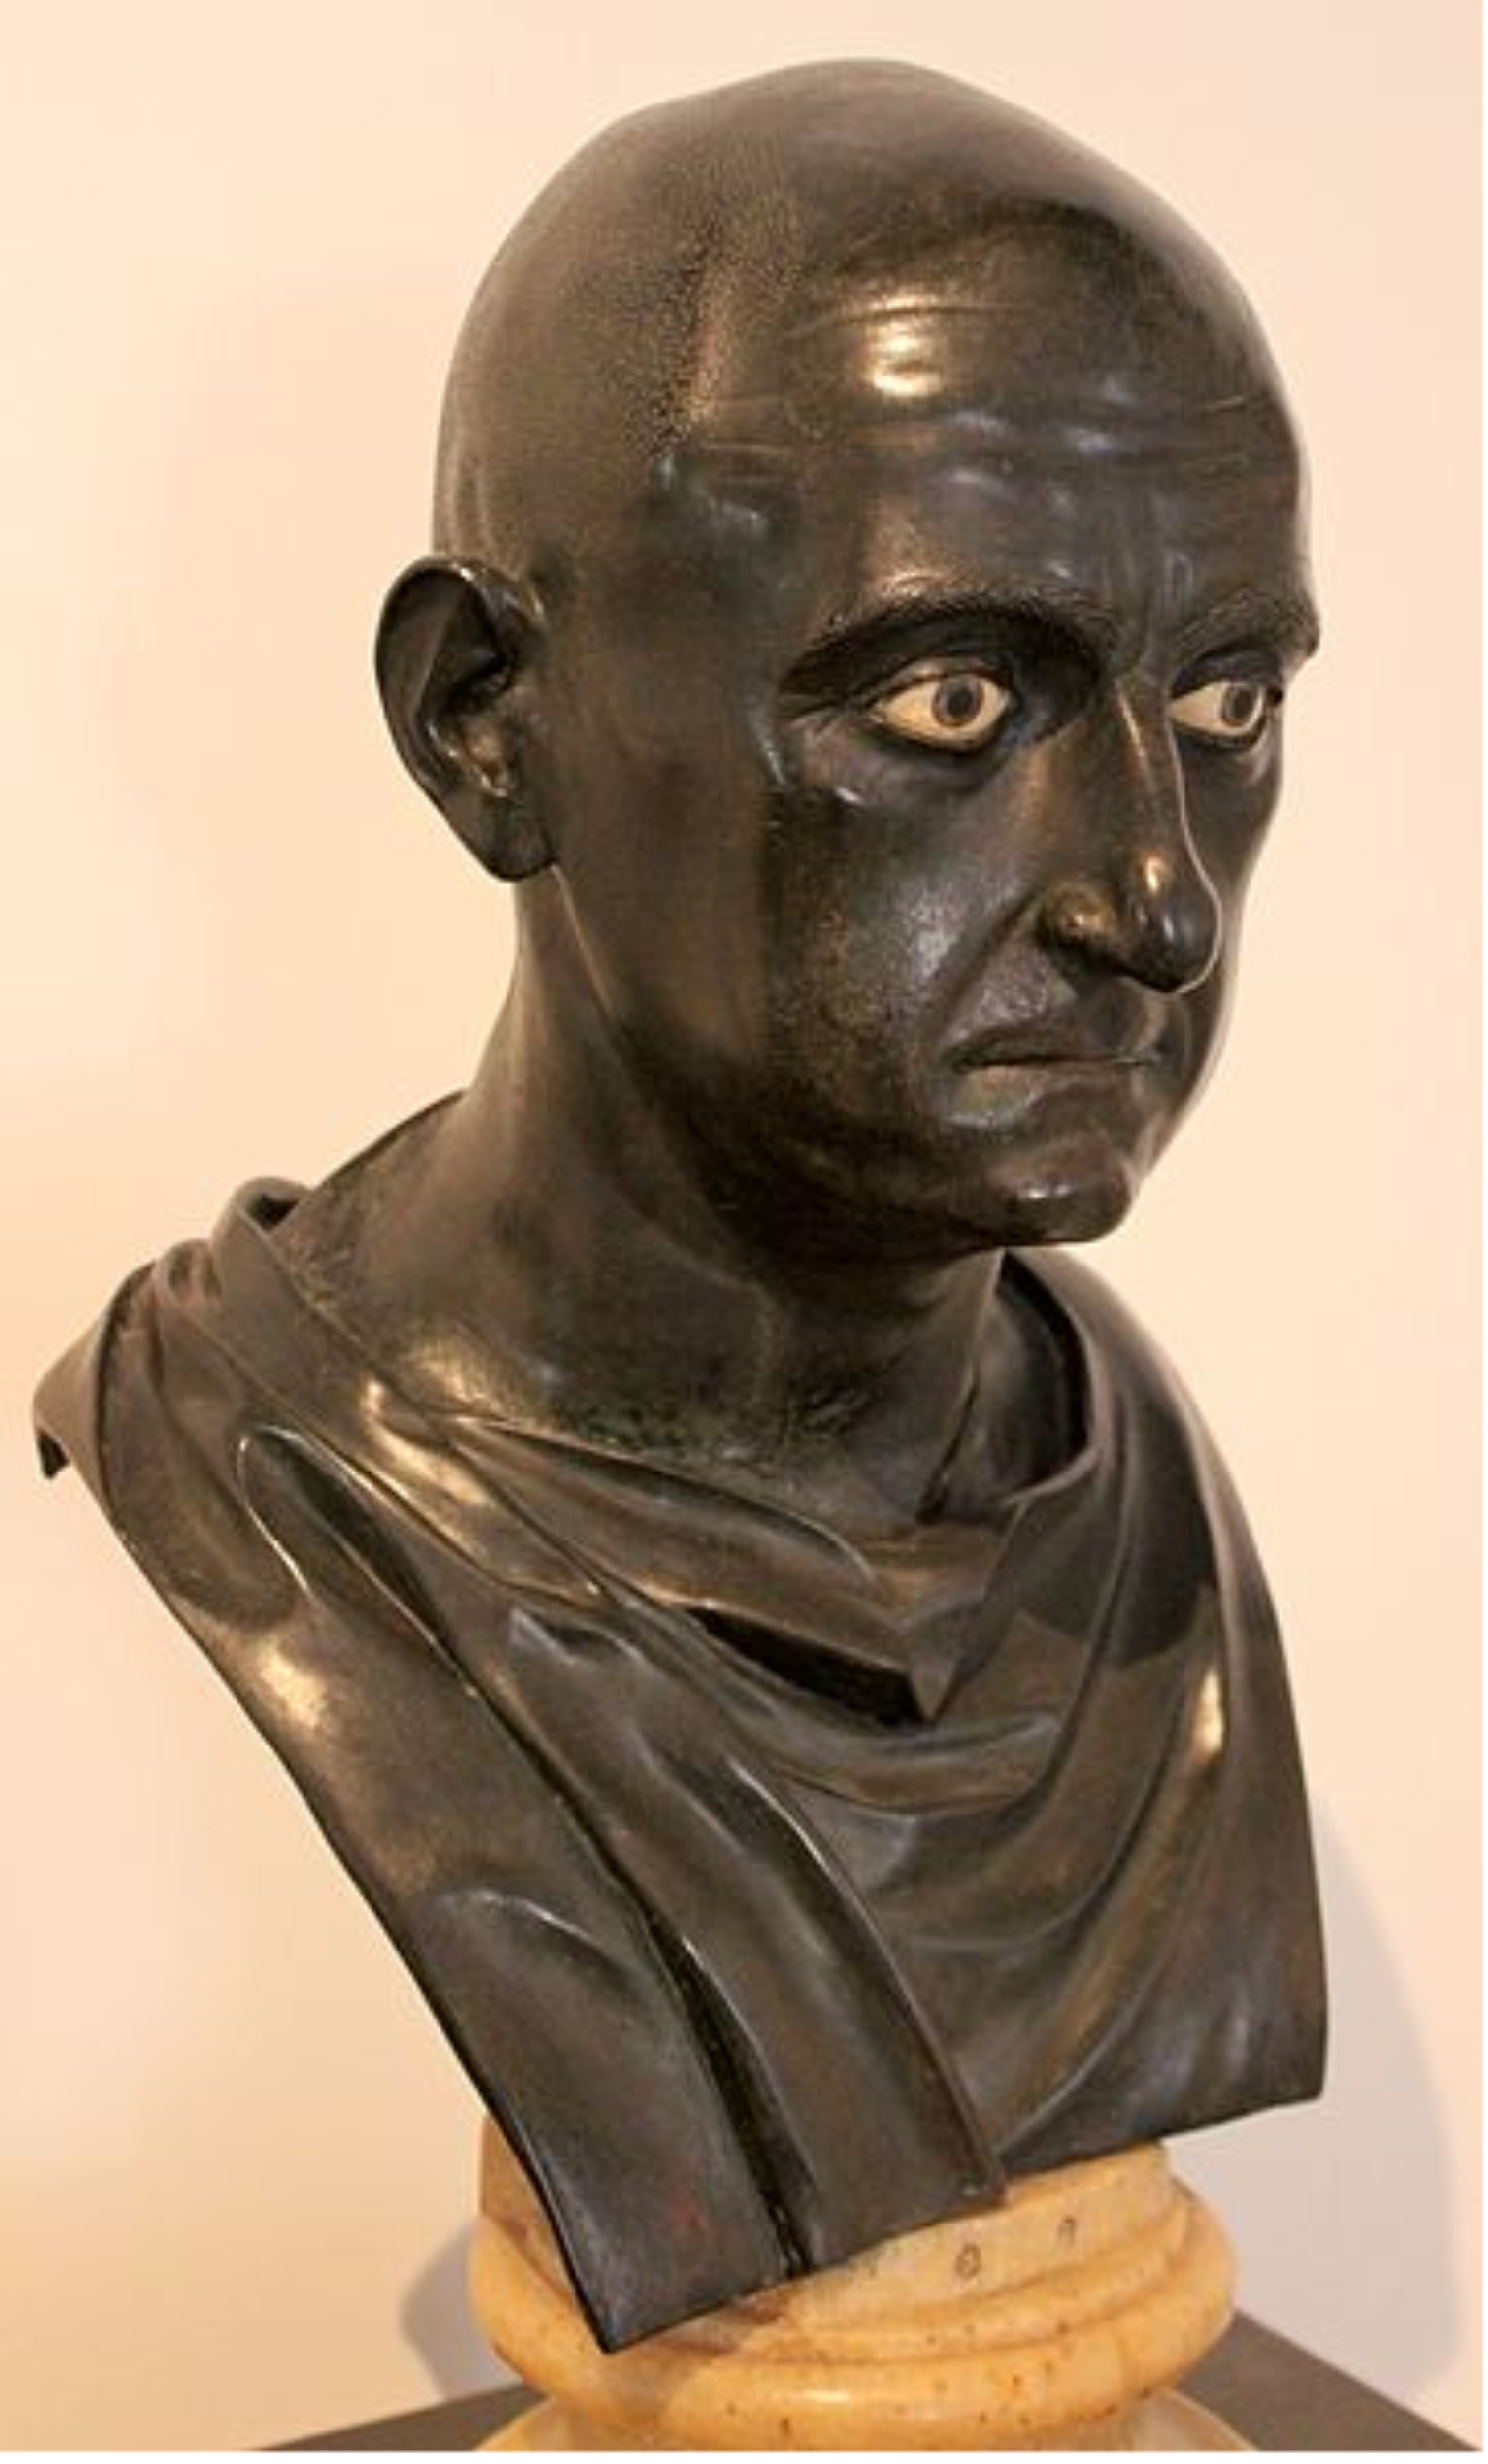 Nace Escipión, el general romano que inició la conquista de la Península